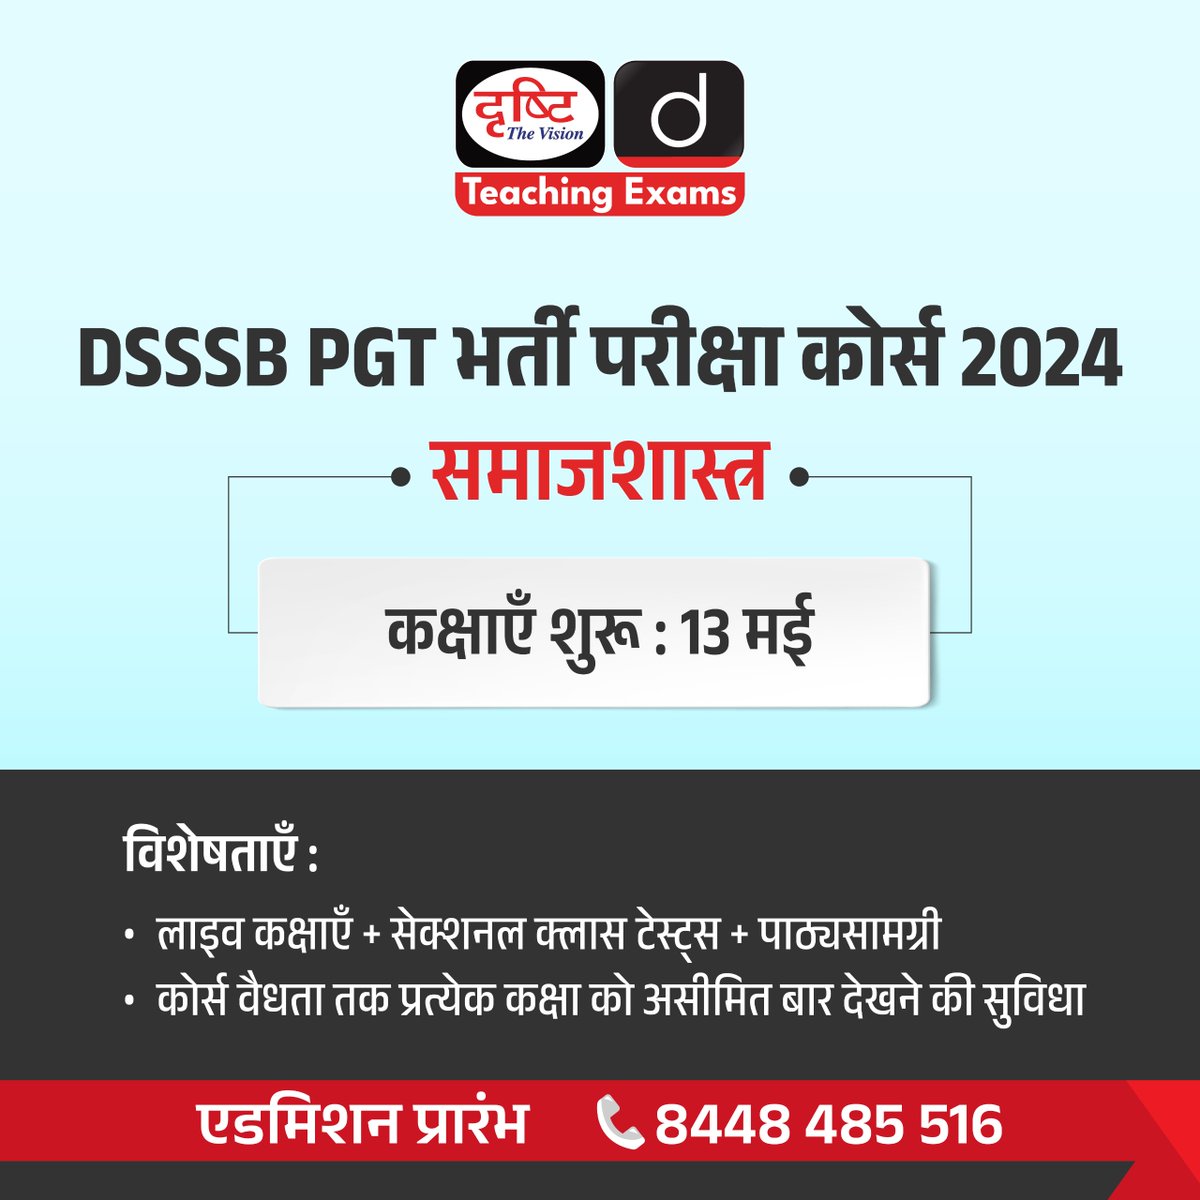 DSSSB PGT भर्ती परीक्षा कोर्स 2024 (समाजशास्त्र)
.
एडमिशन आरंभ
.
कोर्स से संबंधित अधिक जानकारी व एडमिशन के लिये आप इस लिंक पर क्लिक करें: drishti.xyz/Hindi-Online-C…
.
संपर्क करें: 8448485516
.
#DSSSBPGT #PGT #Sociology #AddmissionOpen #OnlineCourse #DrishtiTeaching